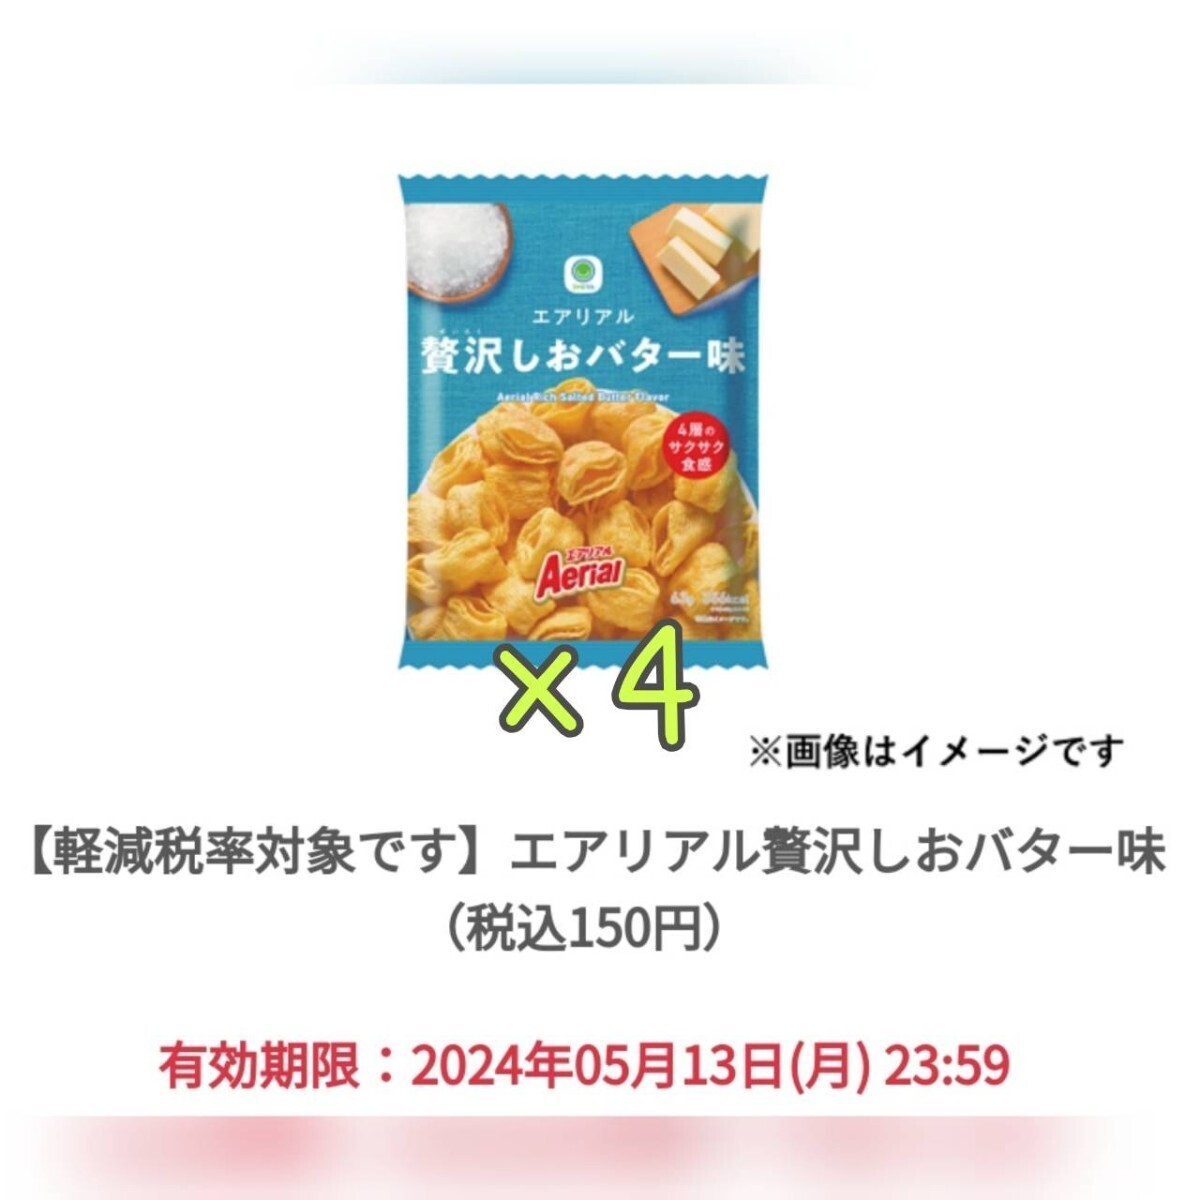 【4個】 エアリアル贅沢しおバター味 ファミリーマート